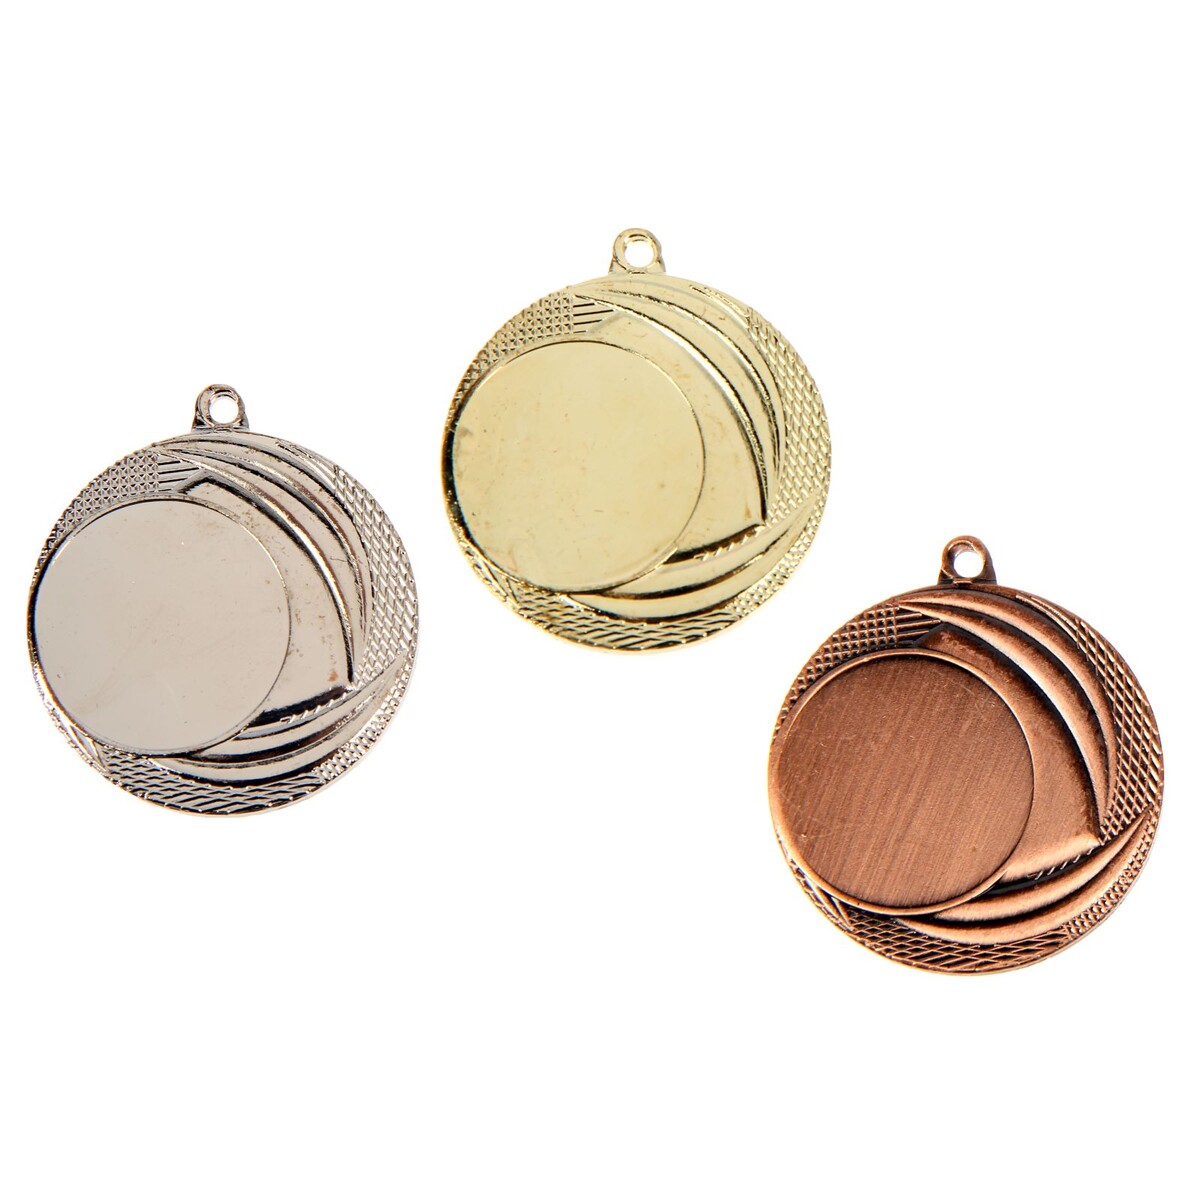 Медаль под нанесение 055 диам 4 см. цвет бронз. без ленты медаль под нанесение 055 диам 4 см бронз без ленты